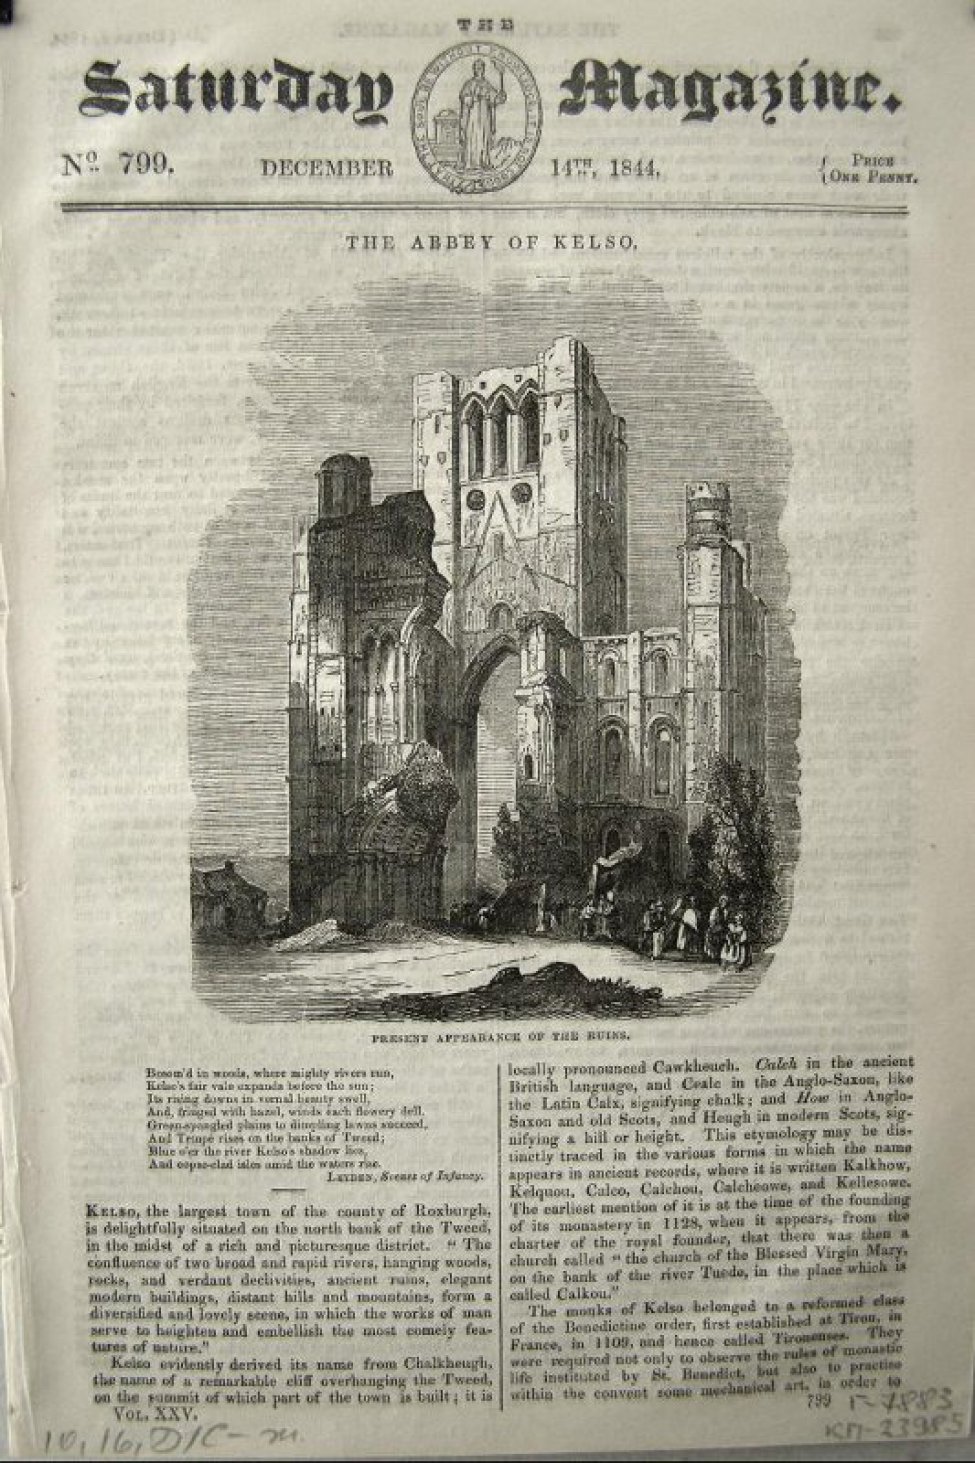 На стр. 225 - гравюра с изображением руин готического собора и фигур людей, стоящих группами перед ними.
На стр. 232изображена шахматная доска с 6 фигурами.